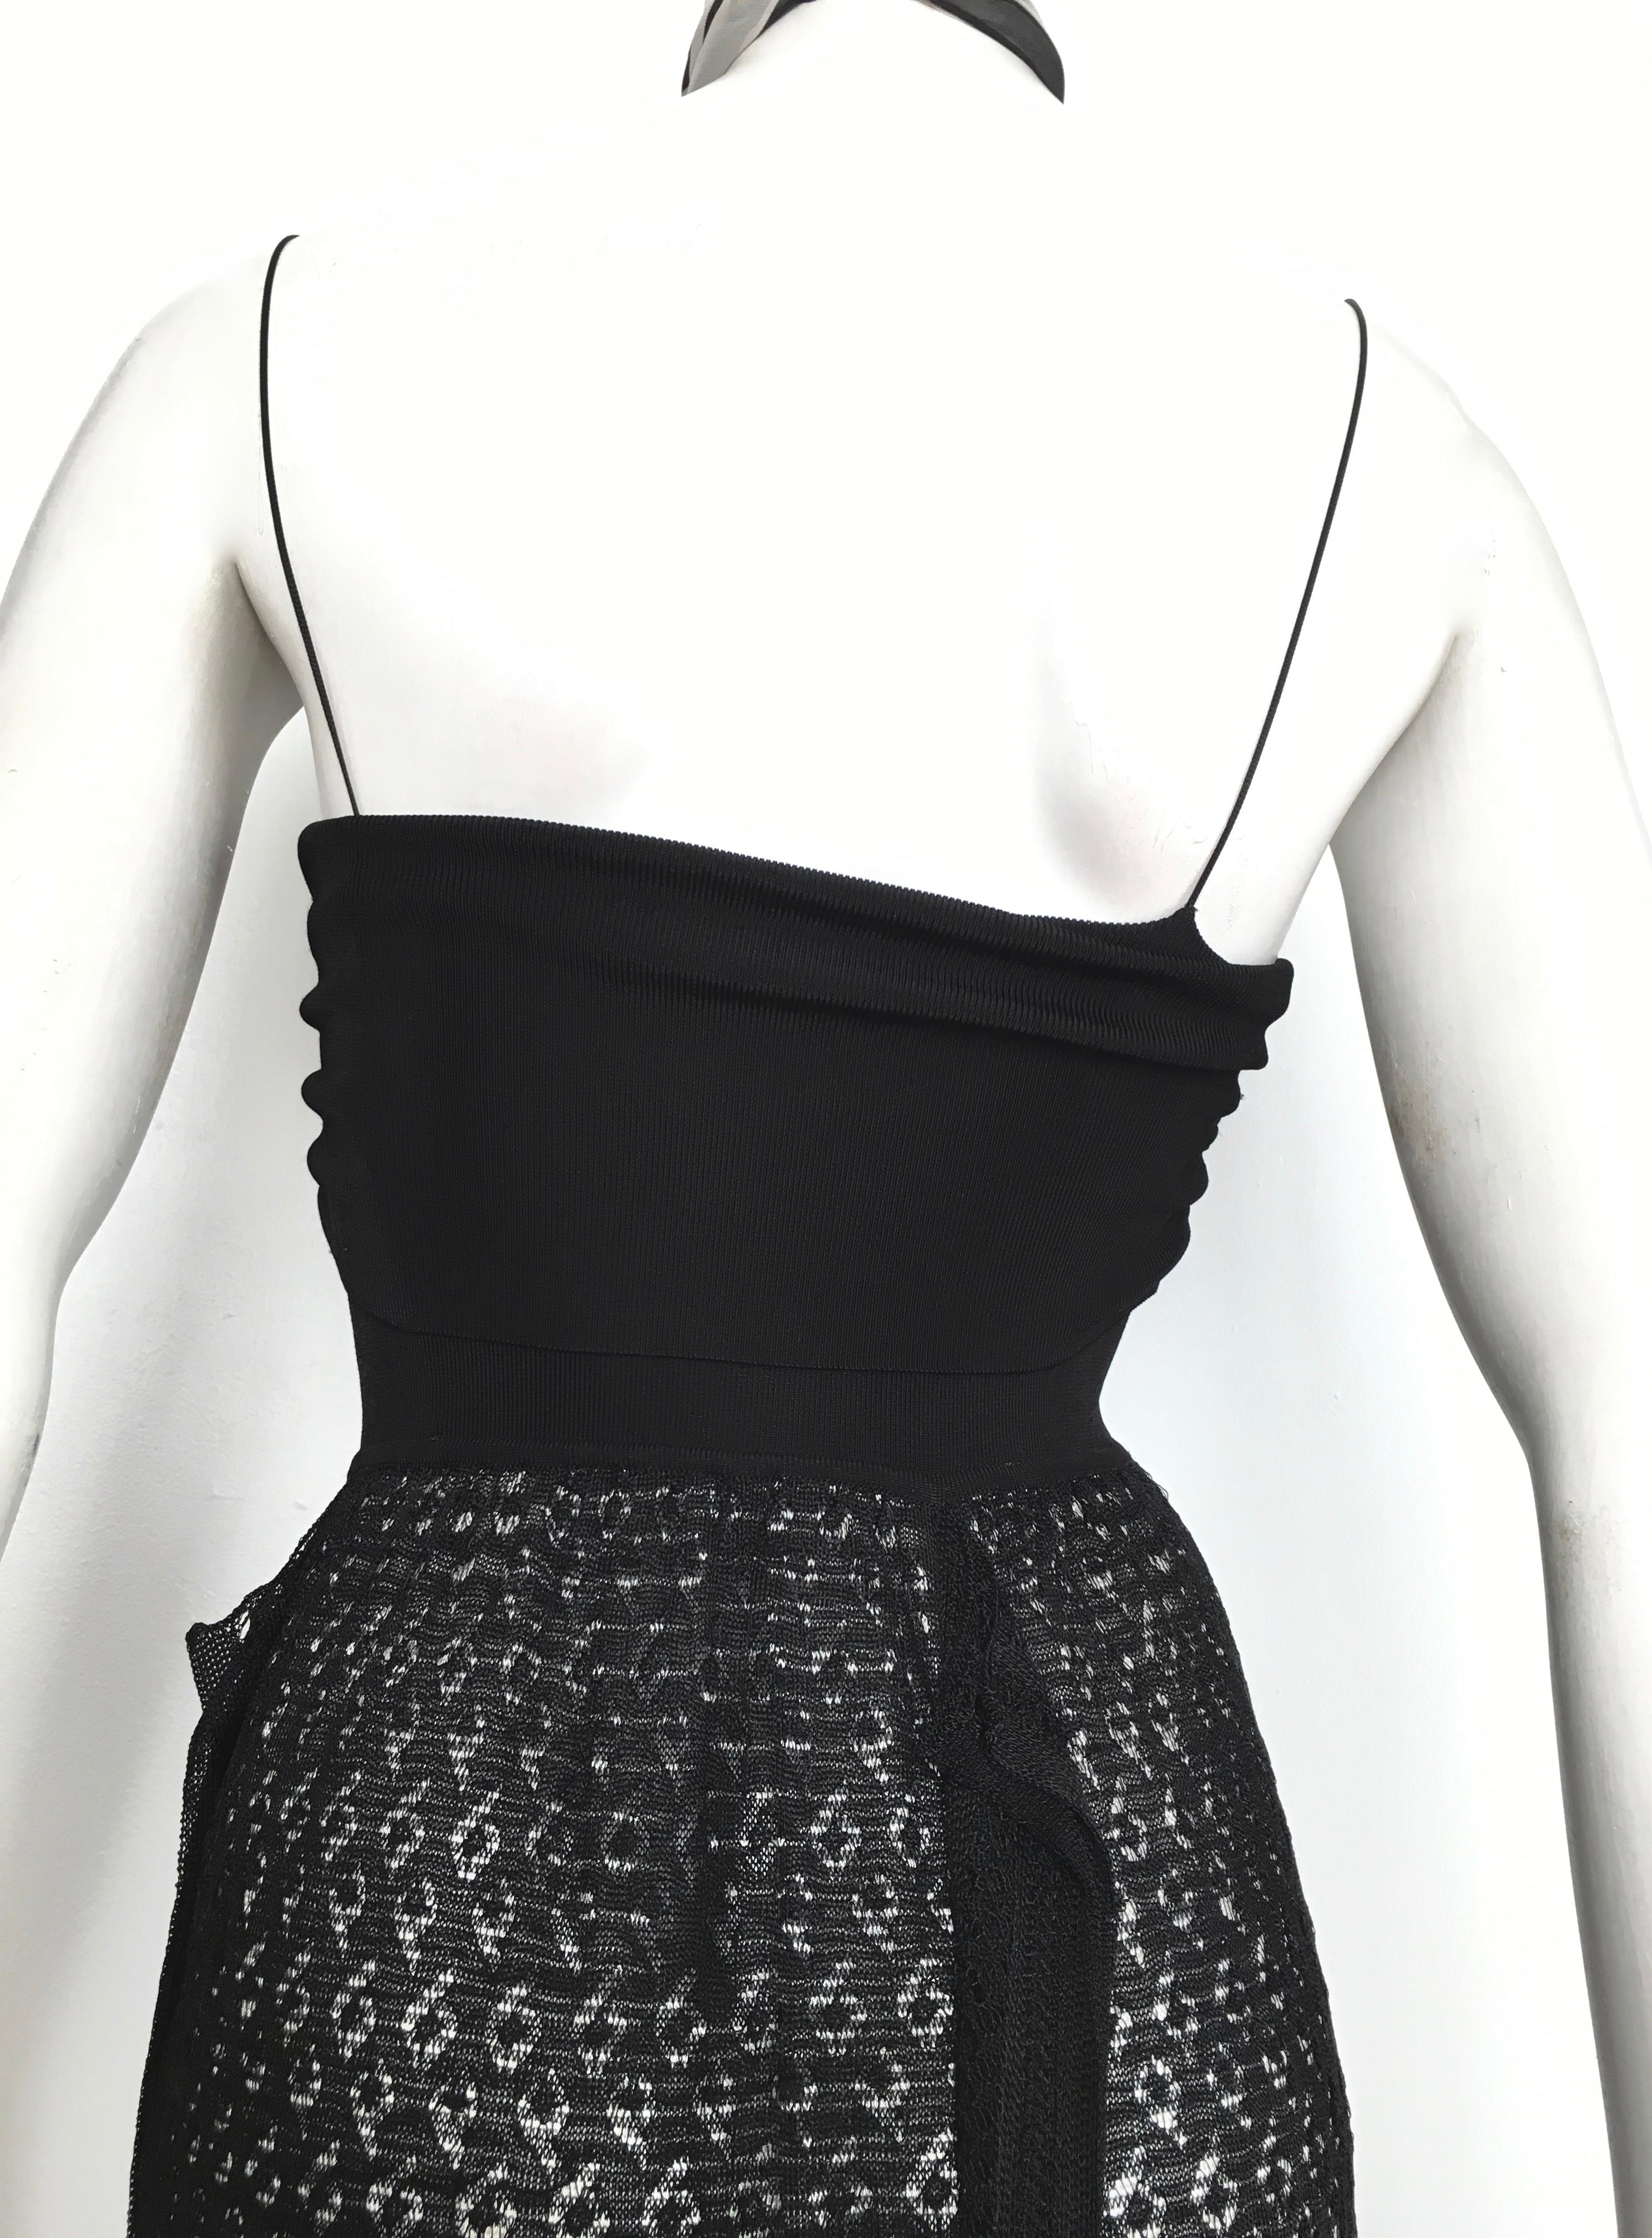 Missoni Lace Black and White Spaghetti Strap Maxi Dress For Sale 6